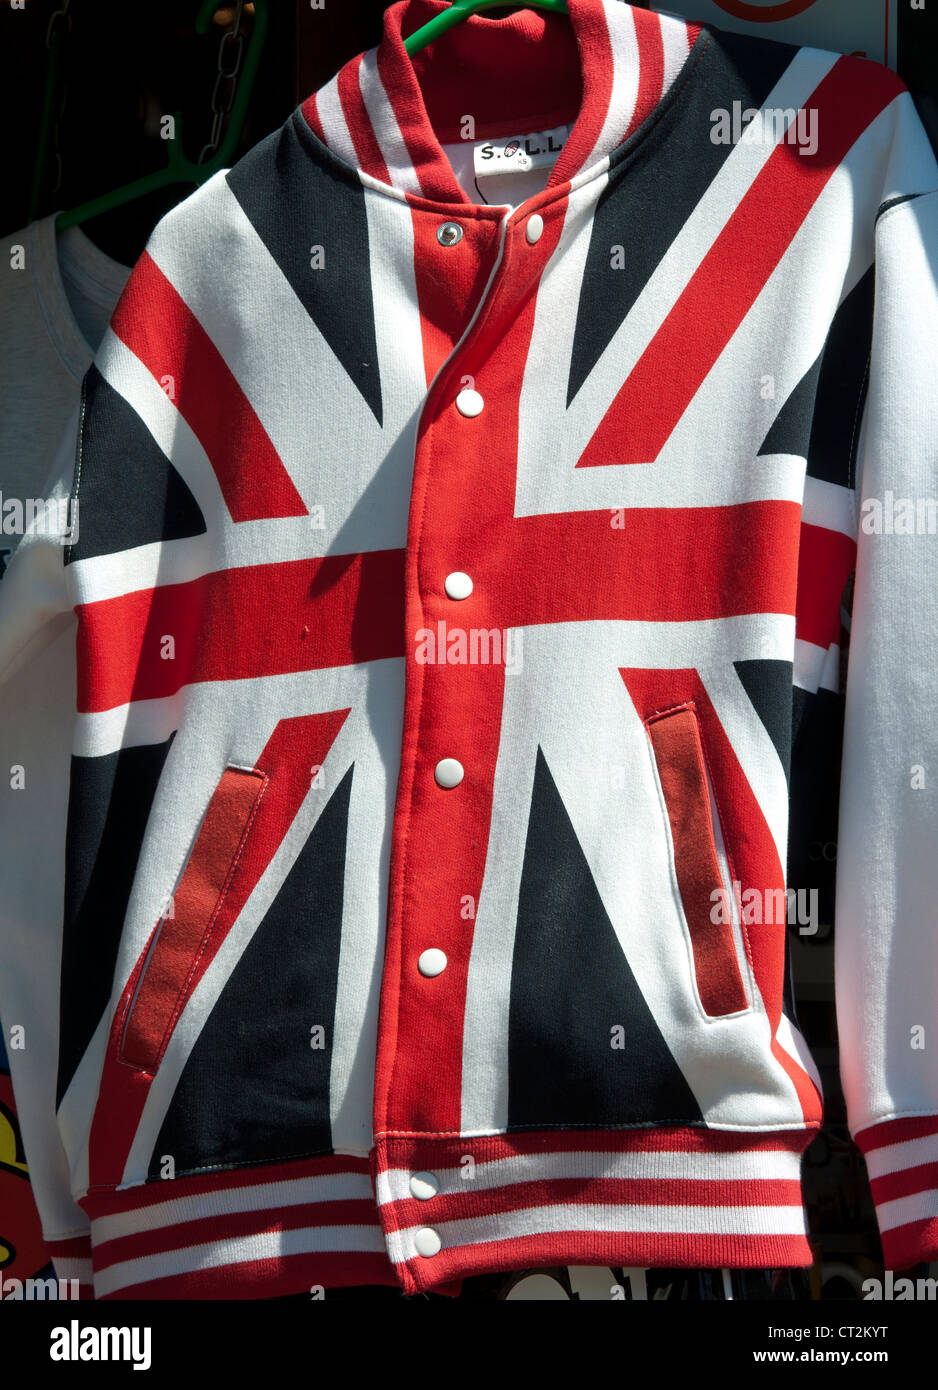 Union Jack jacket Stock Photo - Alamy